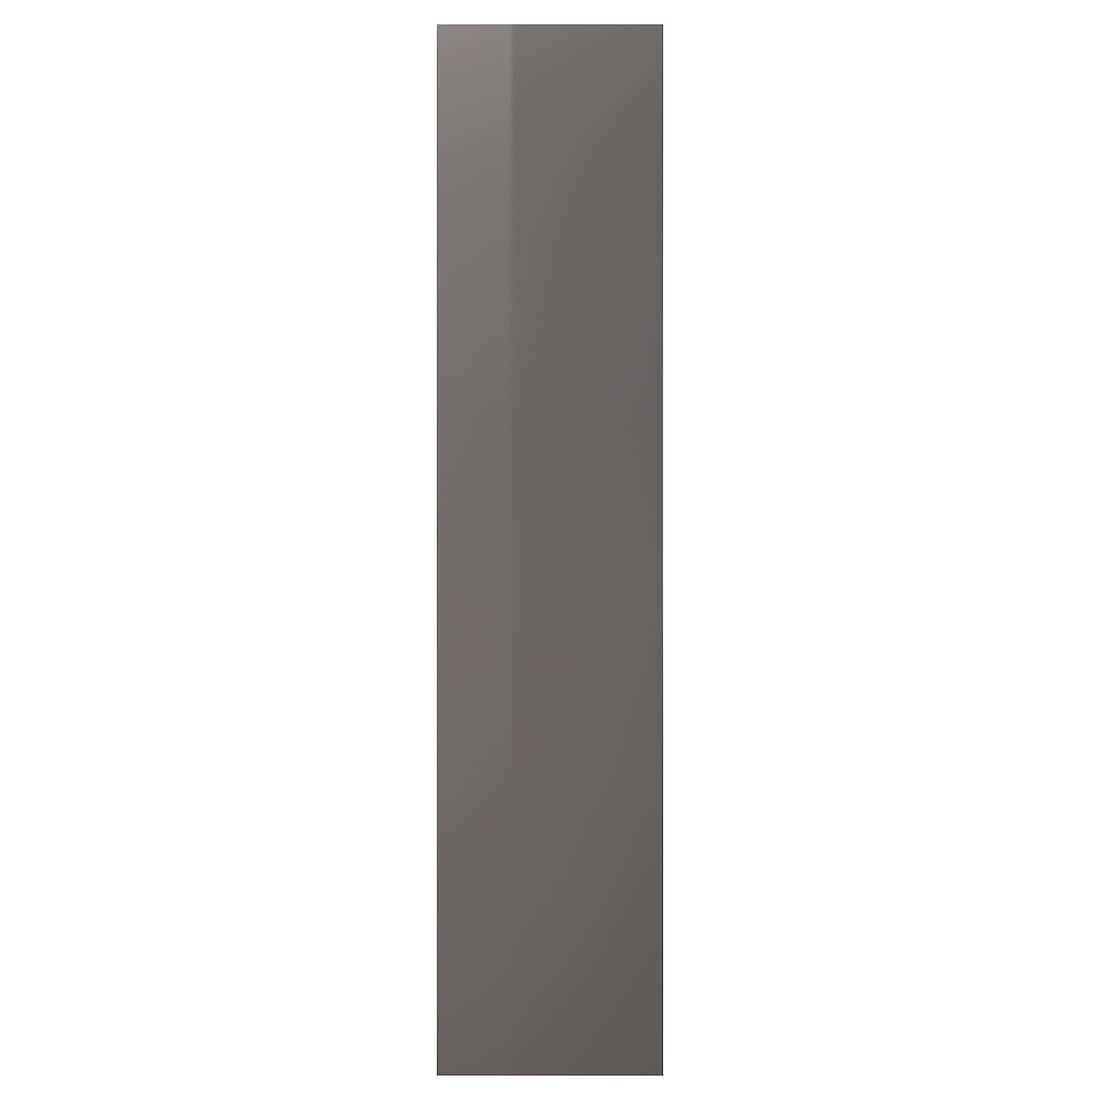 IKEA FARDAL ФАРДАЛЬ Дверь, глянцевый серый, 50x229 см 30484893 304.848.93